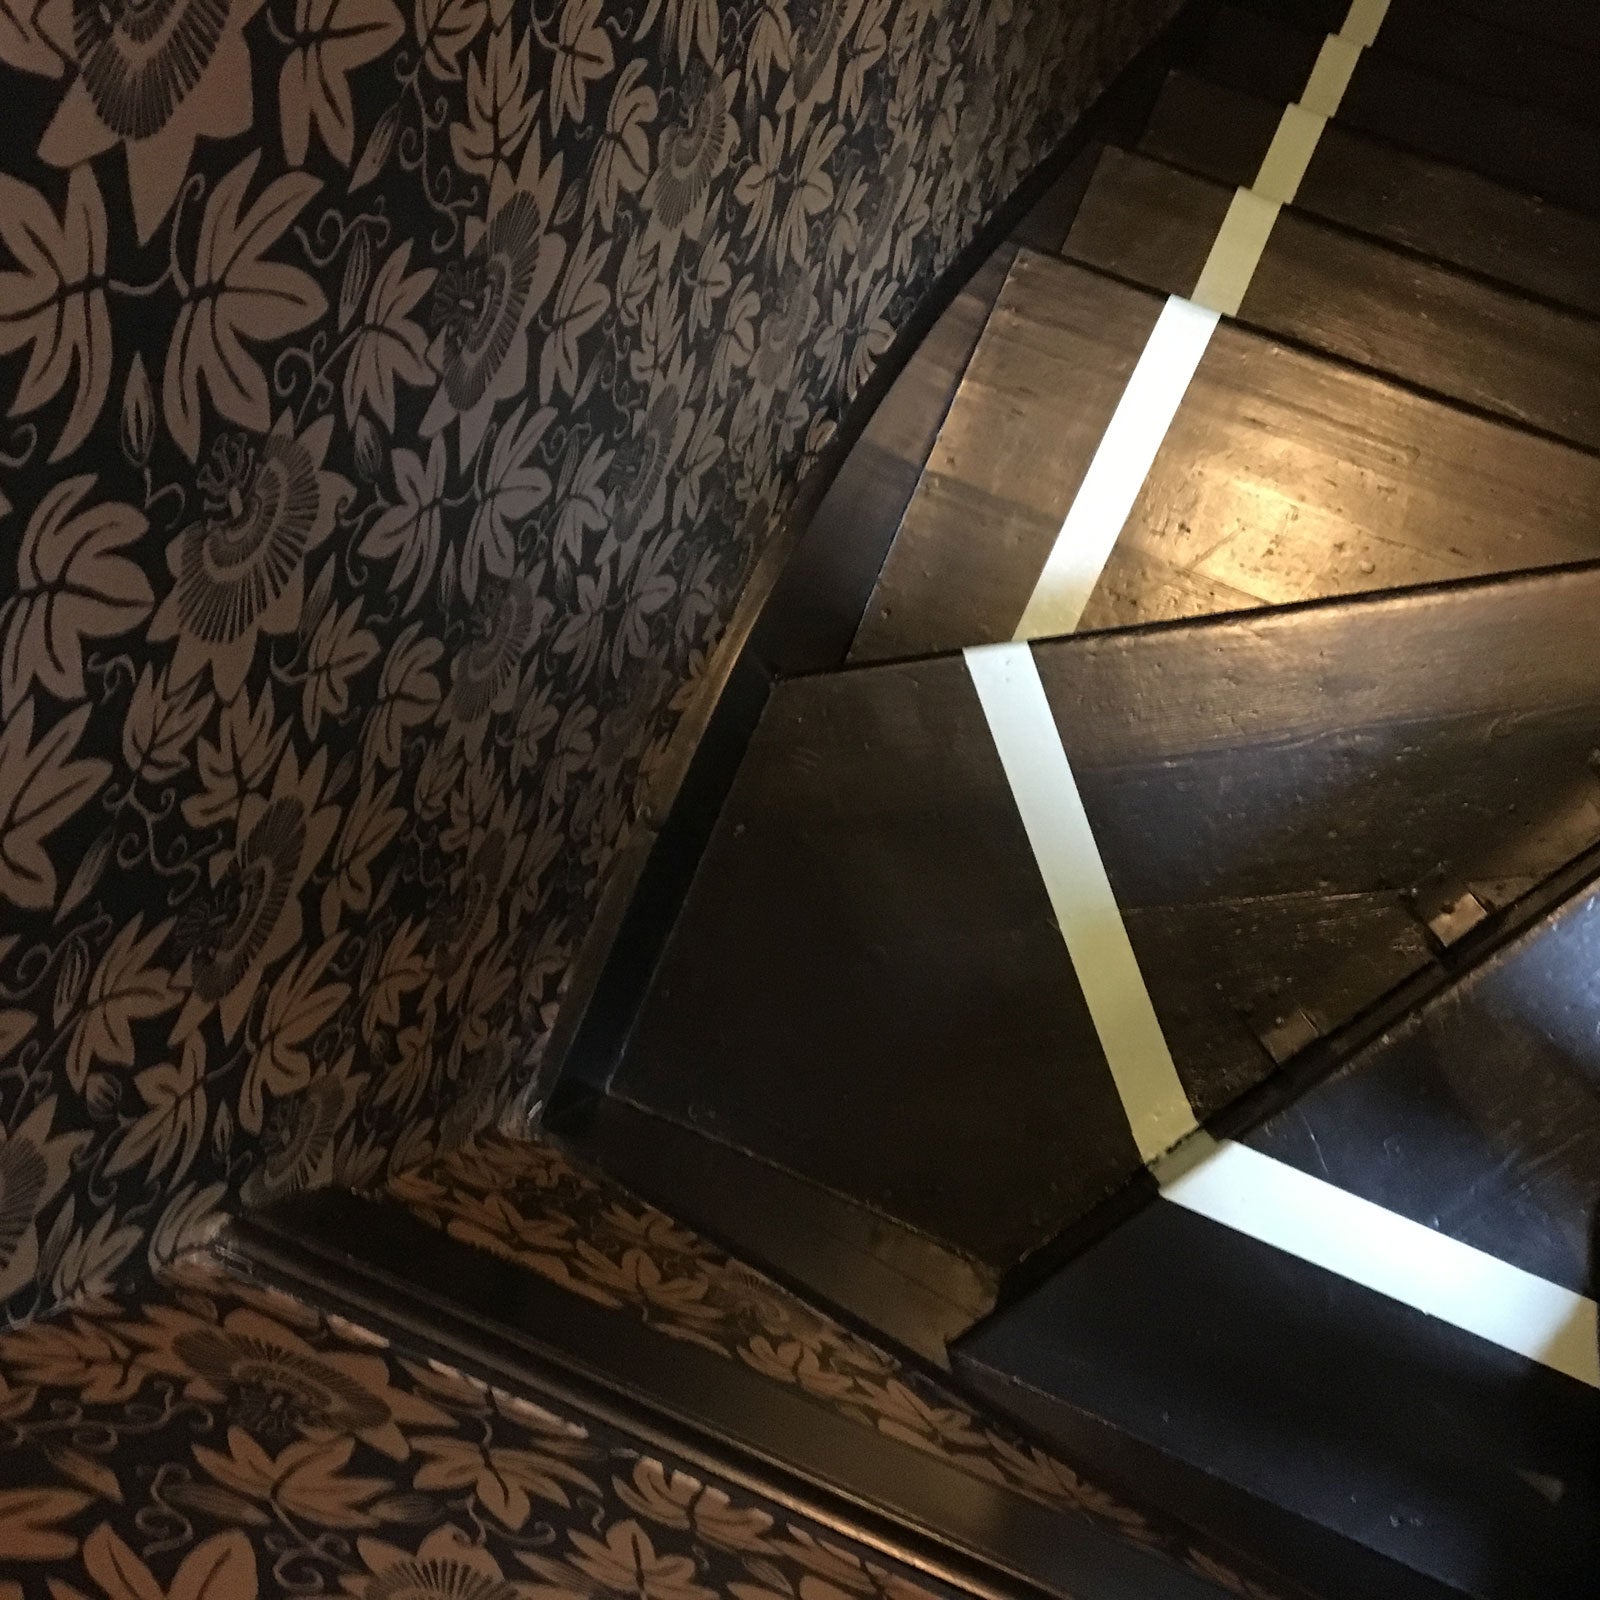 Secret stairway